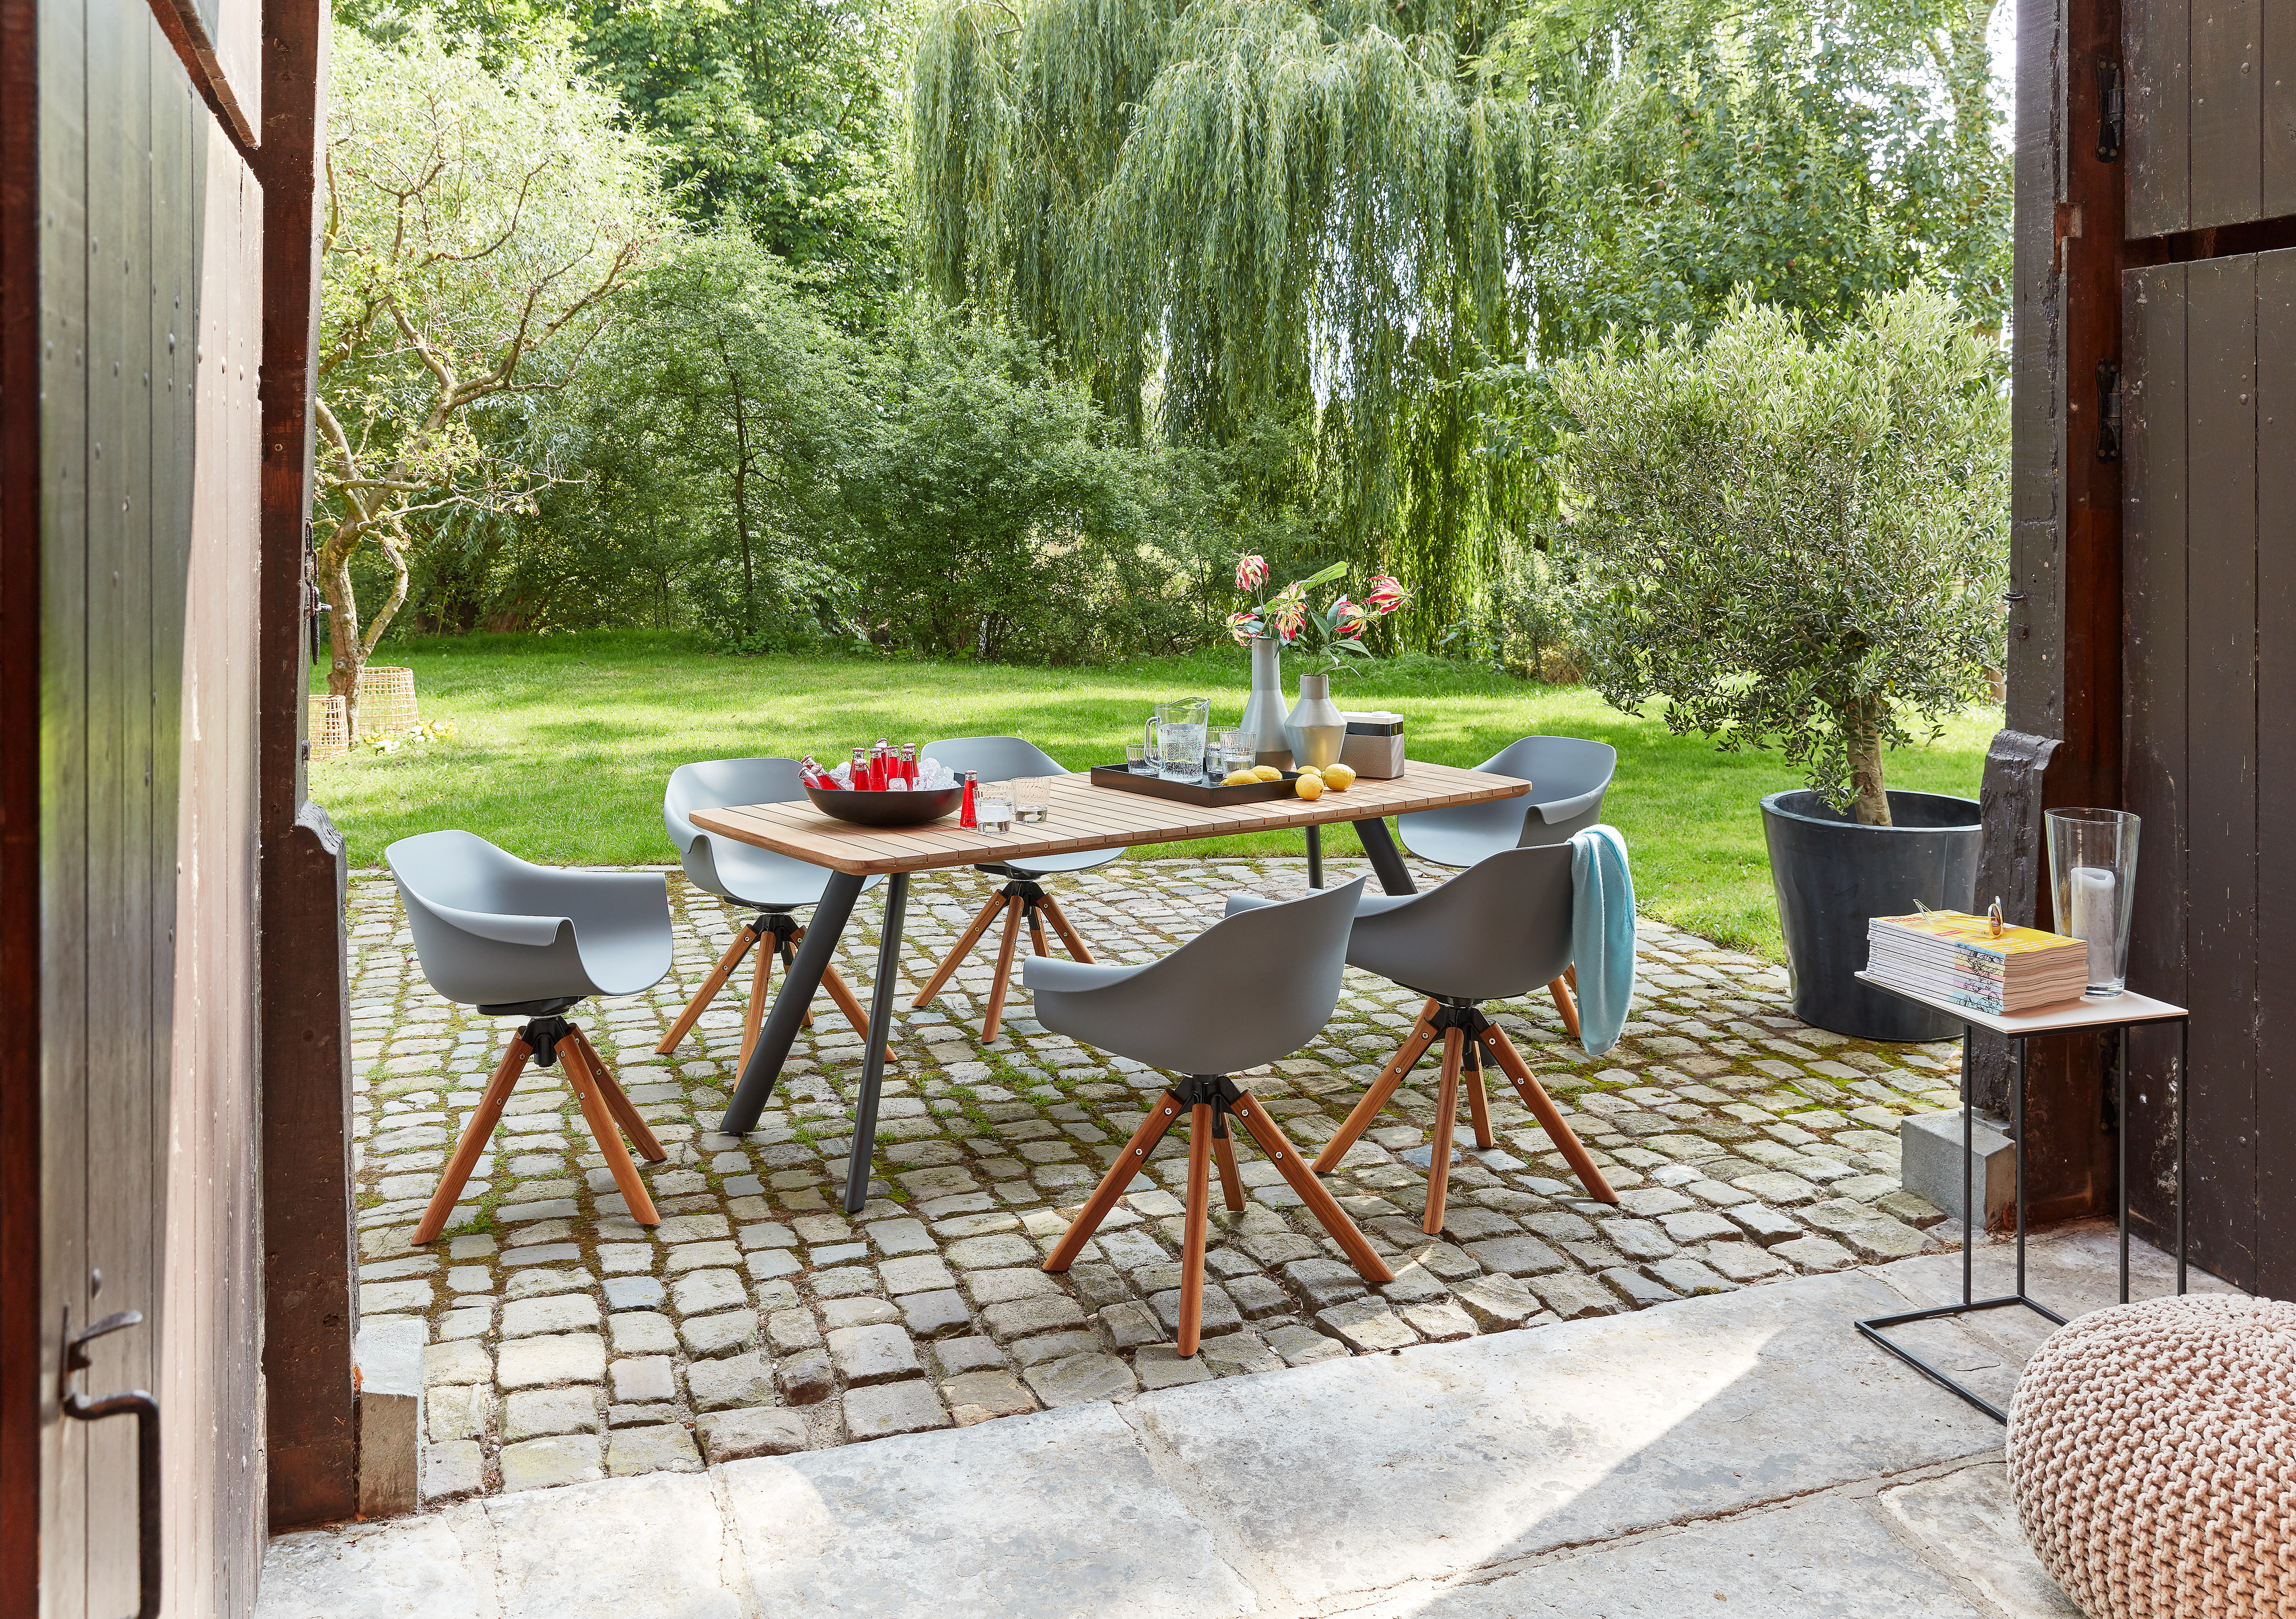 Esstisch mit sechs Stühlen auf einer Terrasse